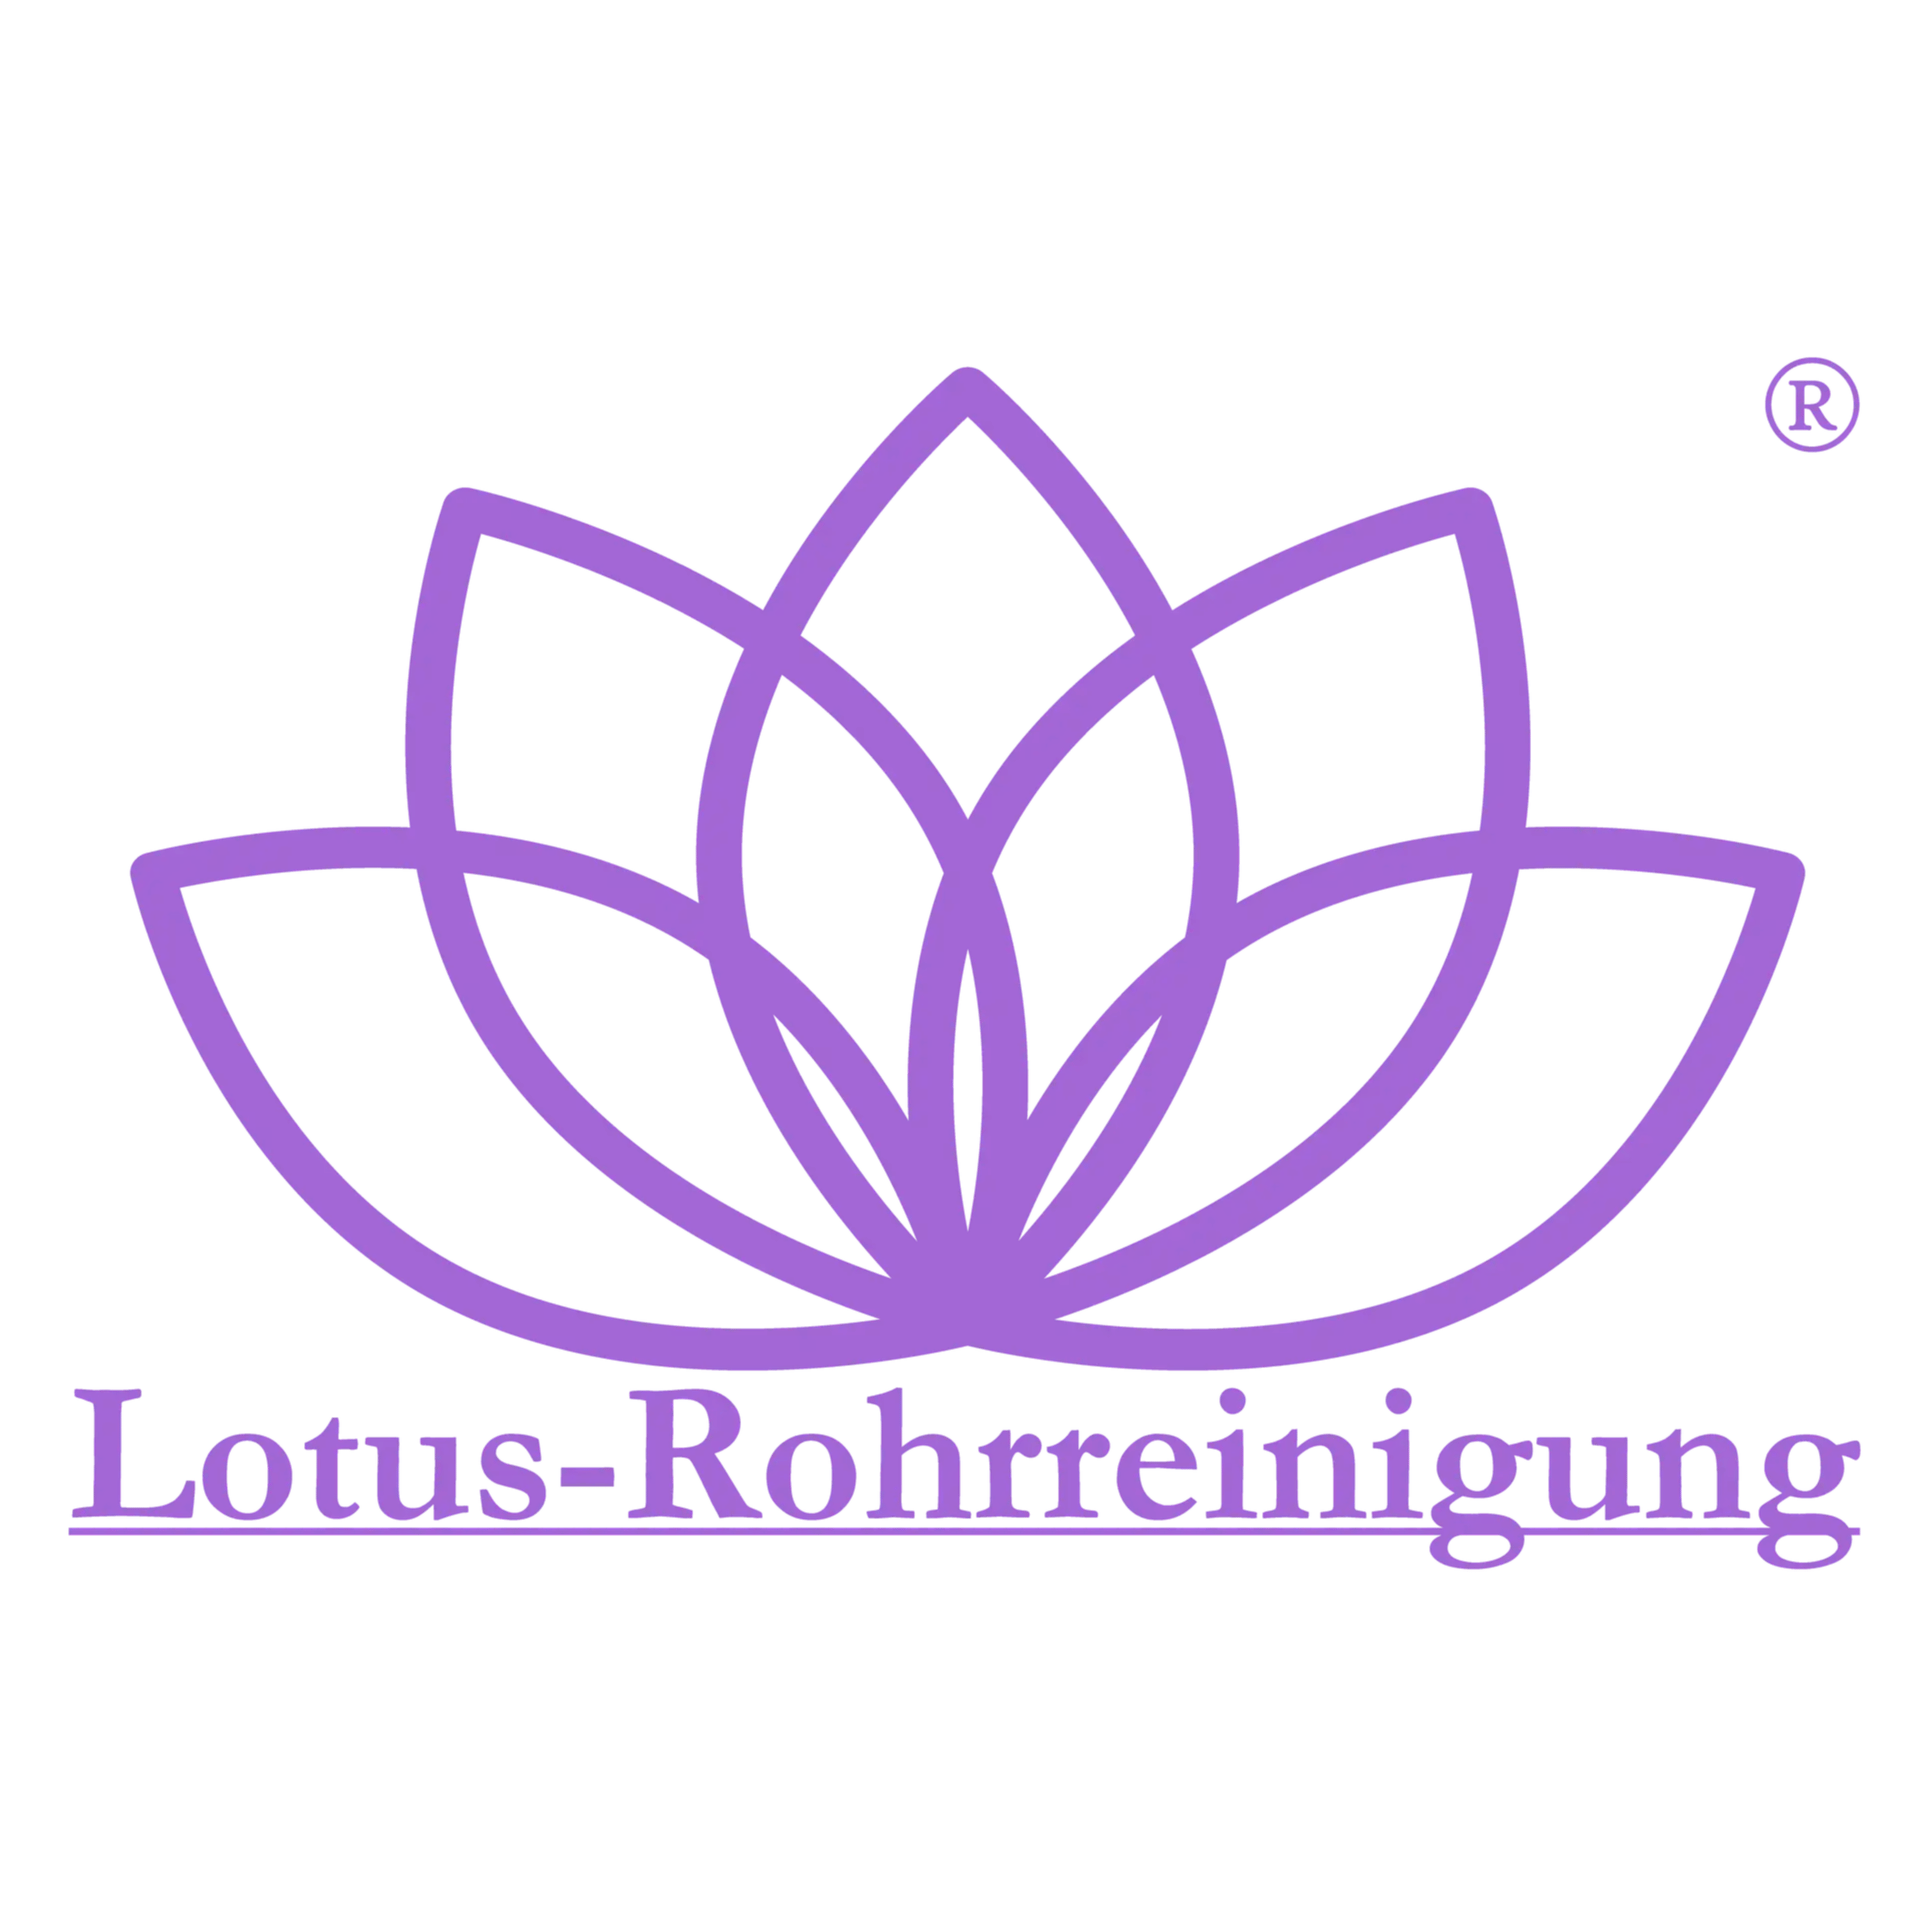 Lotus-Rohrreinigung  